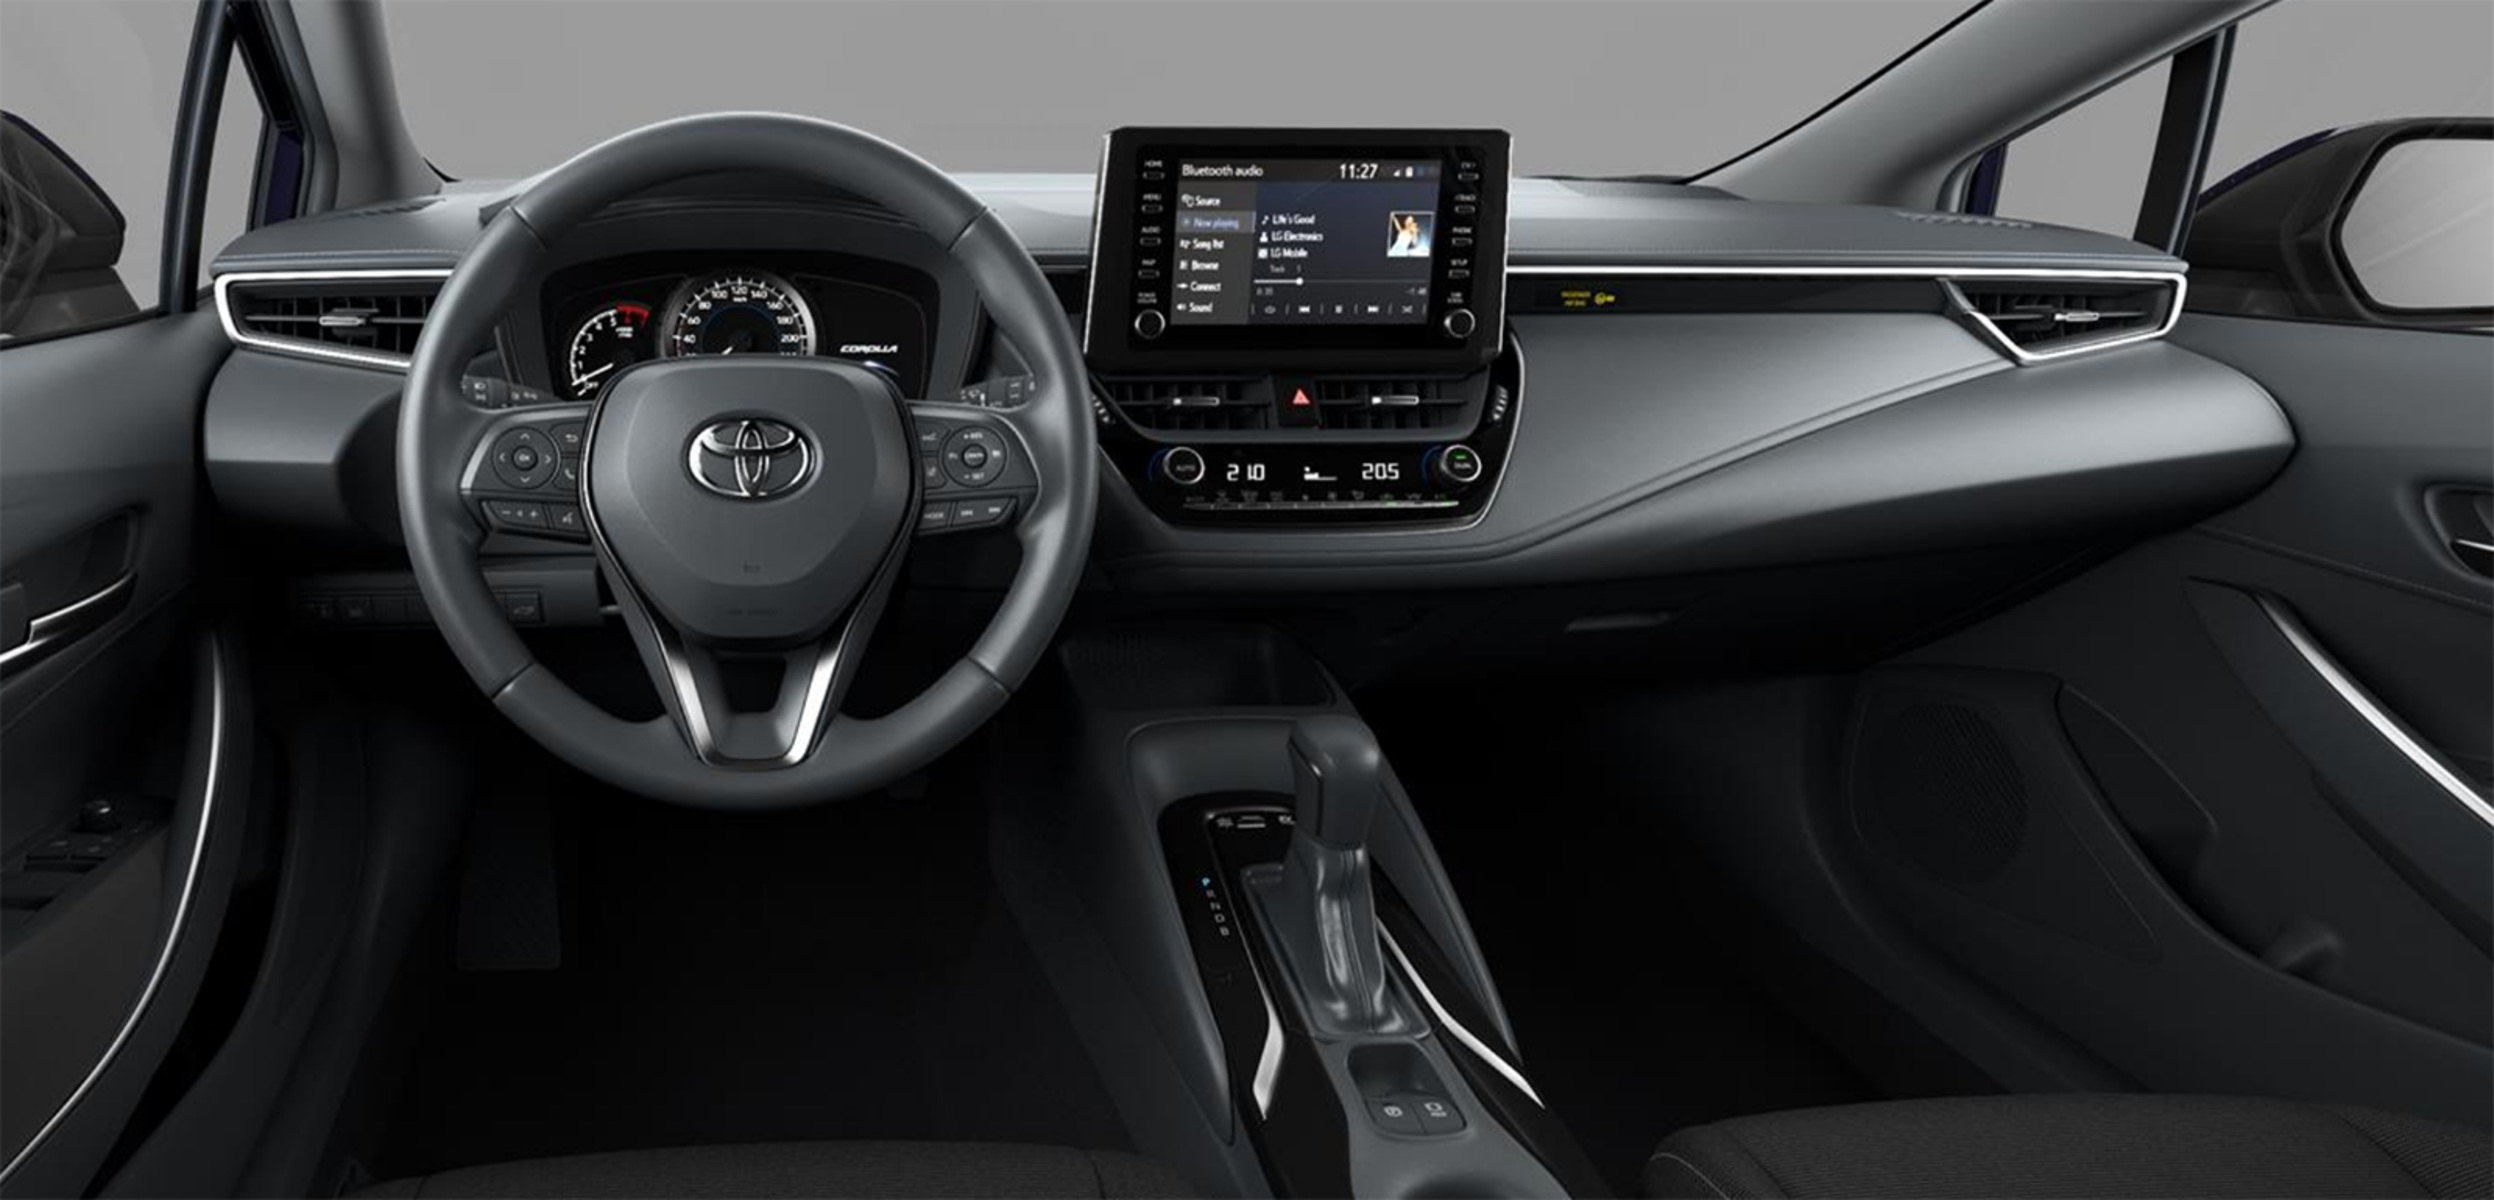 Listino Toyota Corolla Touring Sports prezzo - scheda tecnica - consumi